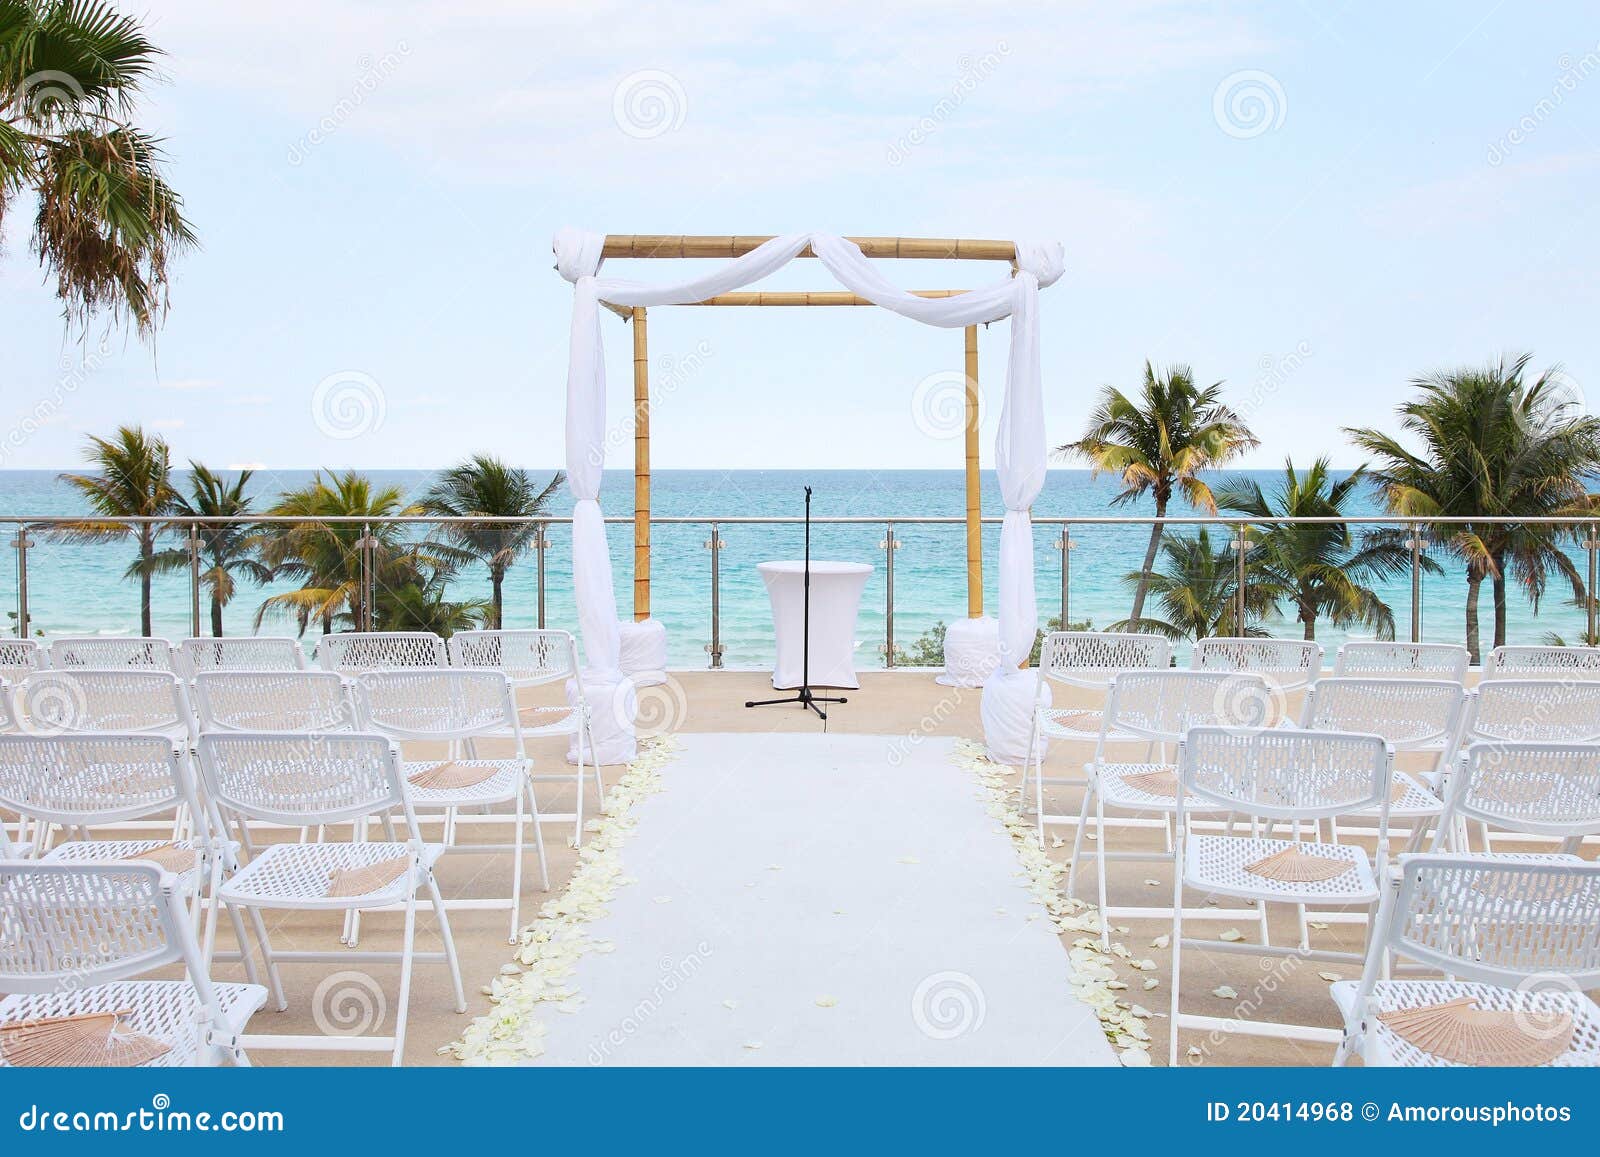 beach wedding - overlooking ocean